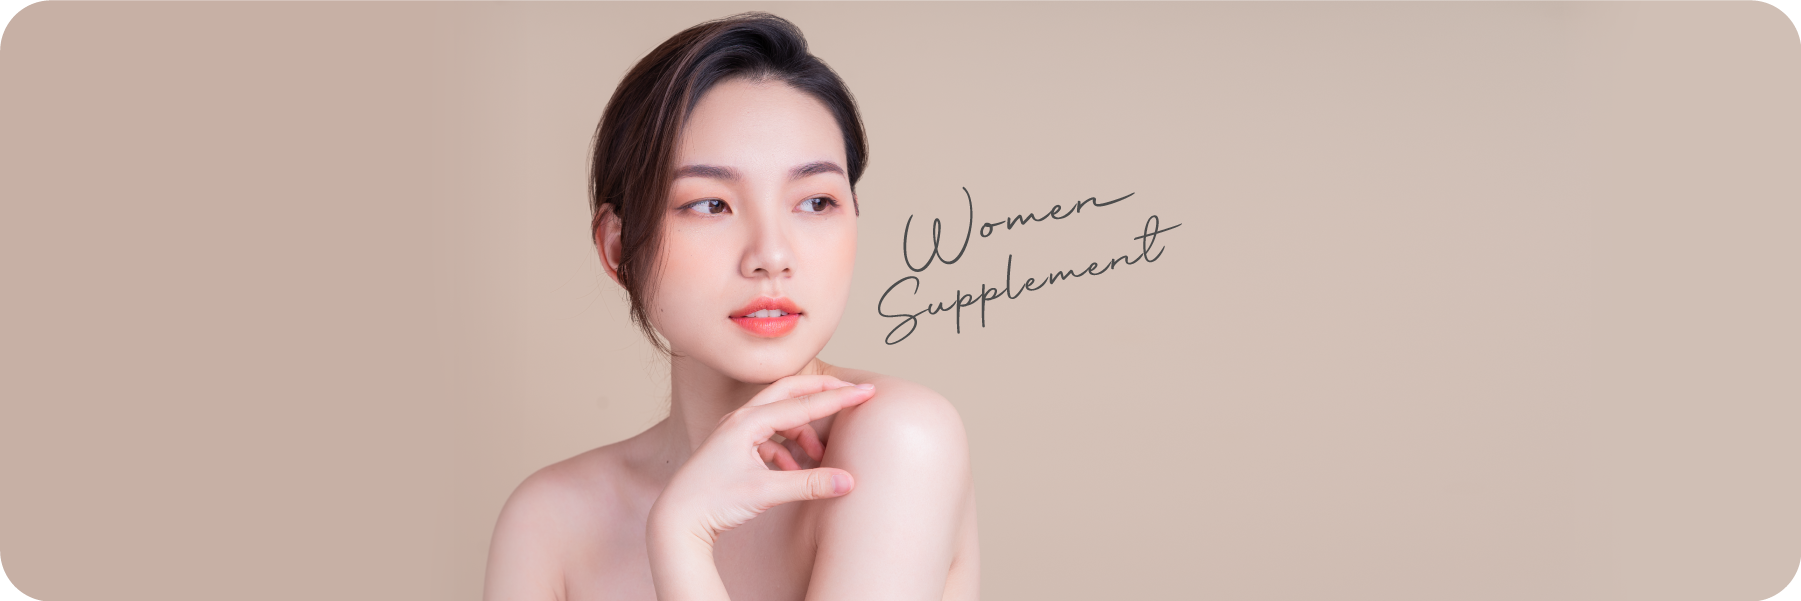 Women Supplement